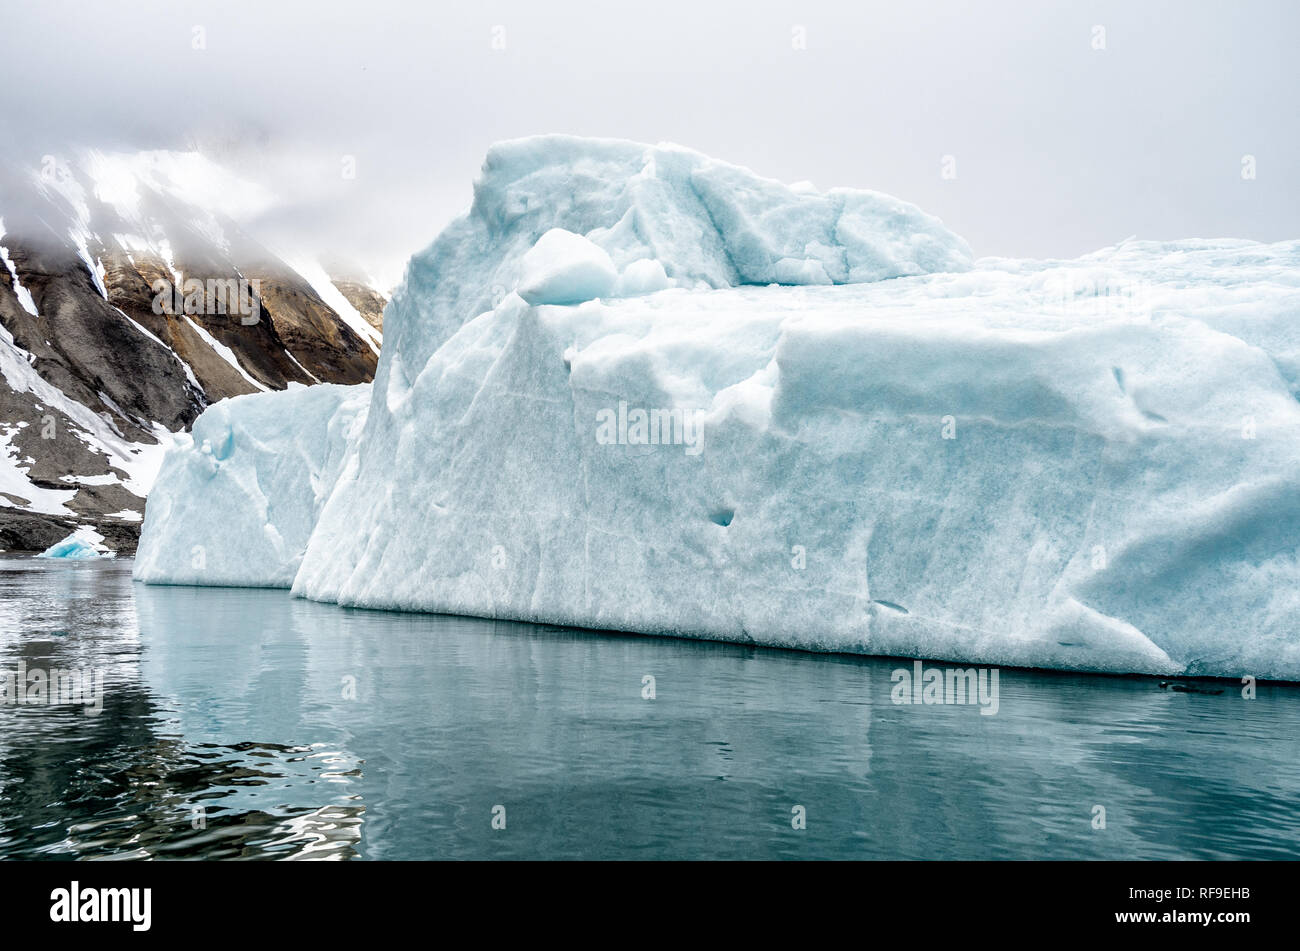 LONGYEARBYEN, Svalbard - die Eisberge und Gletscher in der Nähe von Longyearbyen, im arktischen Archipel von Svalbard. Diese atemberaubenden eisigen Strukturen verkörpern nicht nur die schroffe Schönheit der arktischen Wildnis, sondern dienen auch als entscheidende Indikatoren für den Klimawandel, ihre Veränderungen und Schmelzen, die wichtige Einblicke in die Trends der globalen Erwärmung offenbaren. Stockfoto